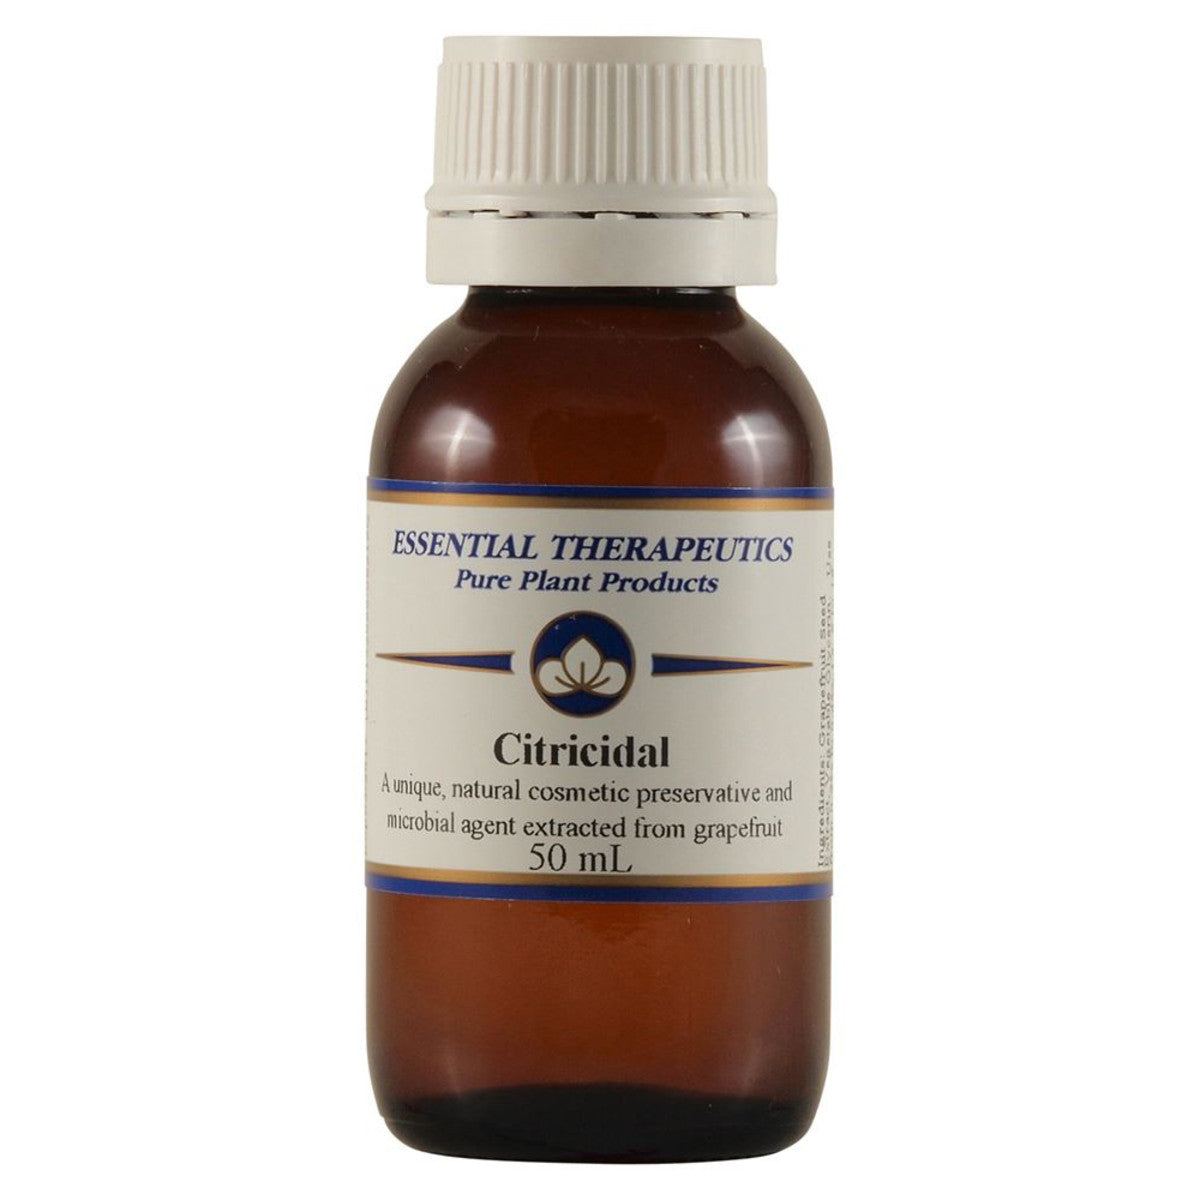 Essential Therapeutic - Citricidal 50ml